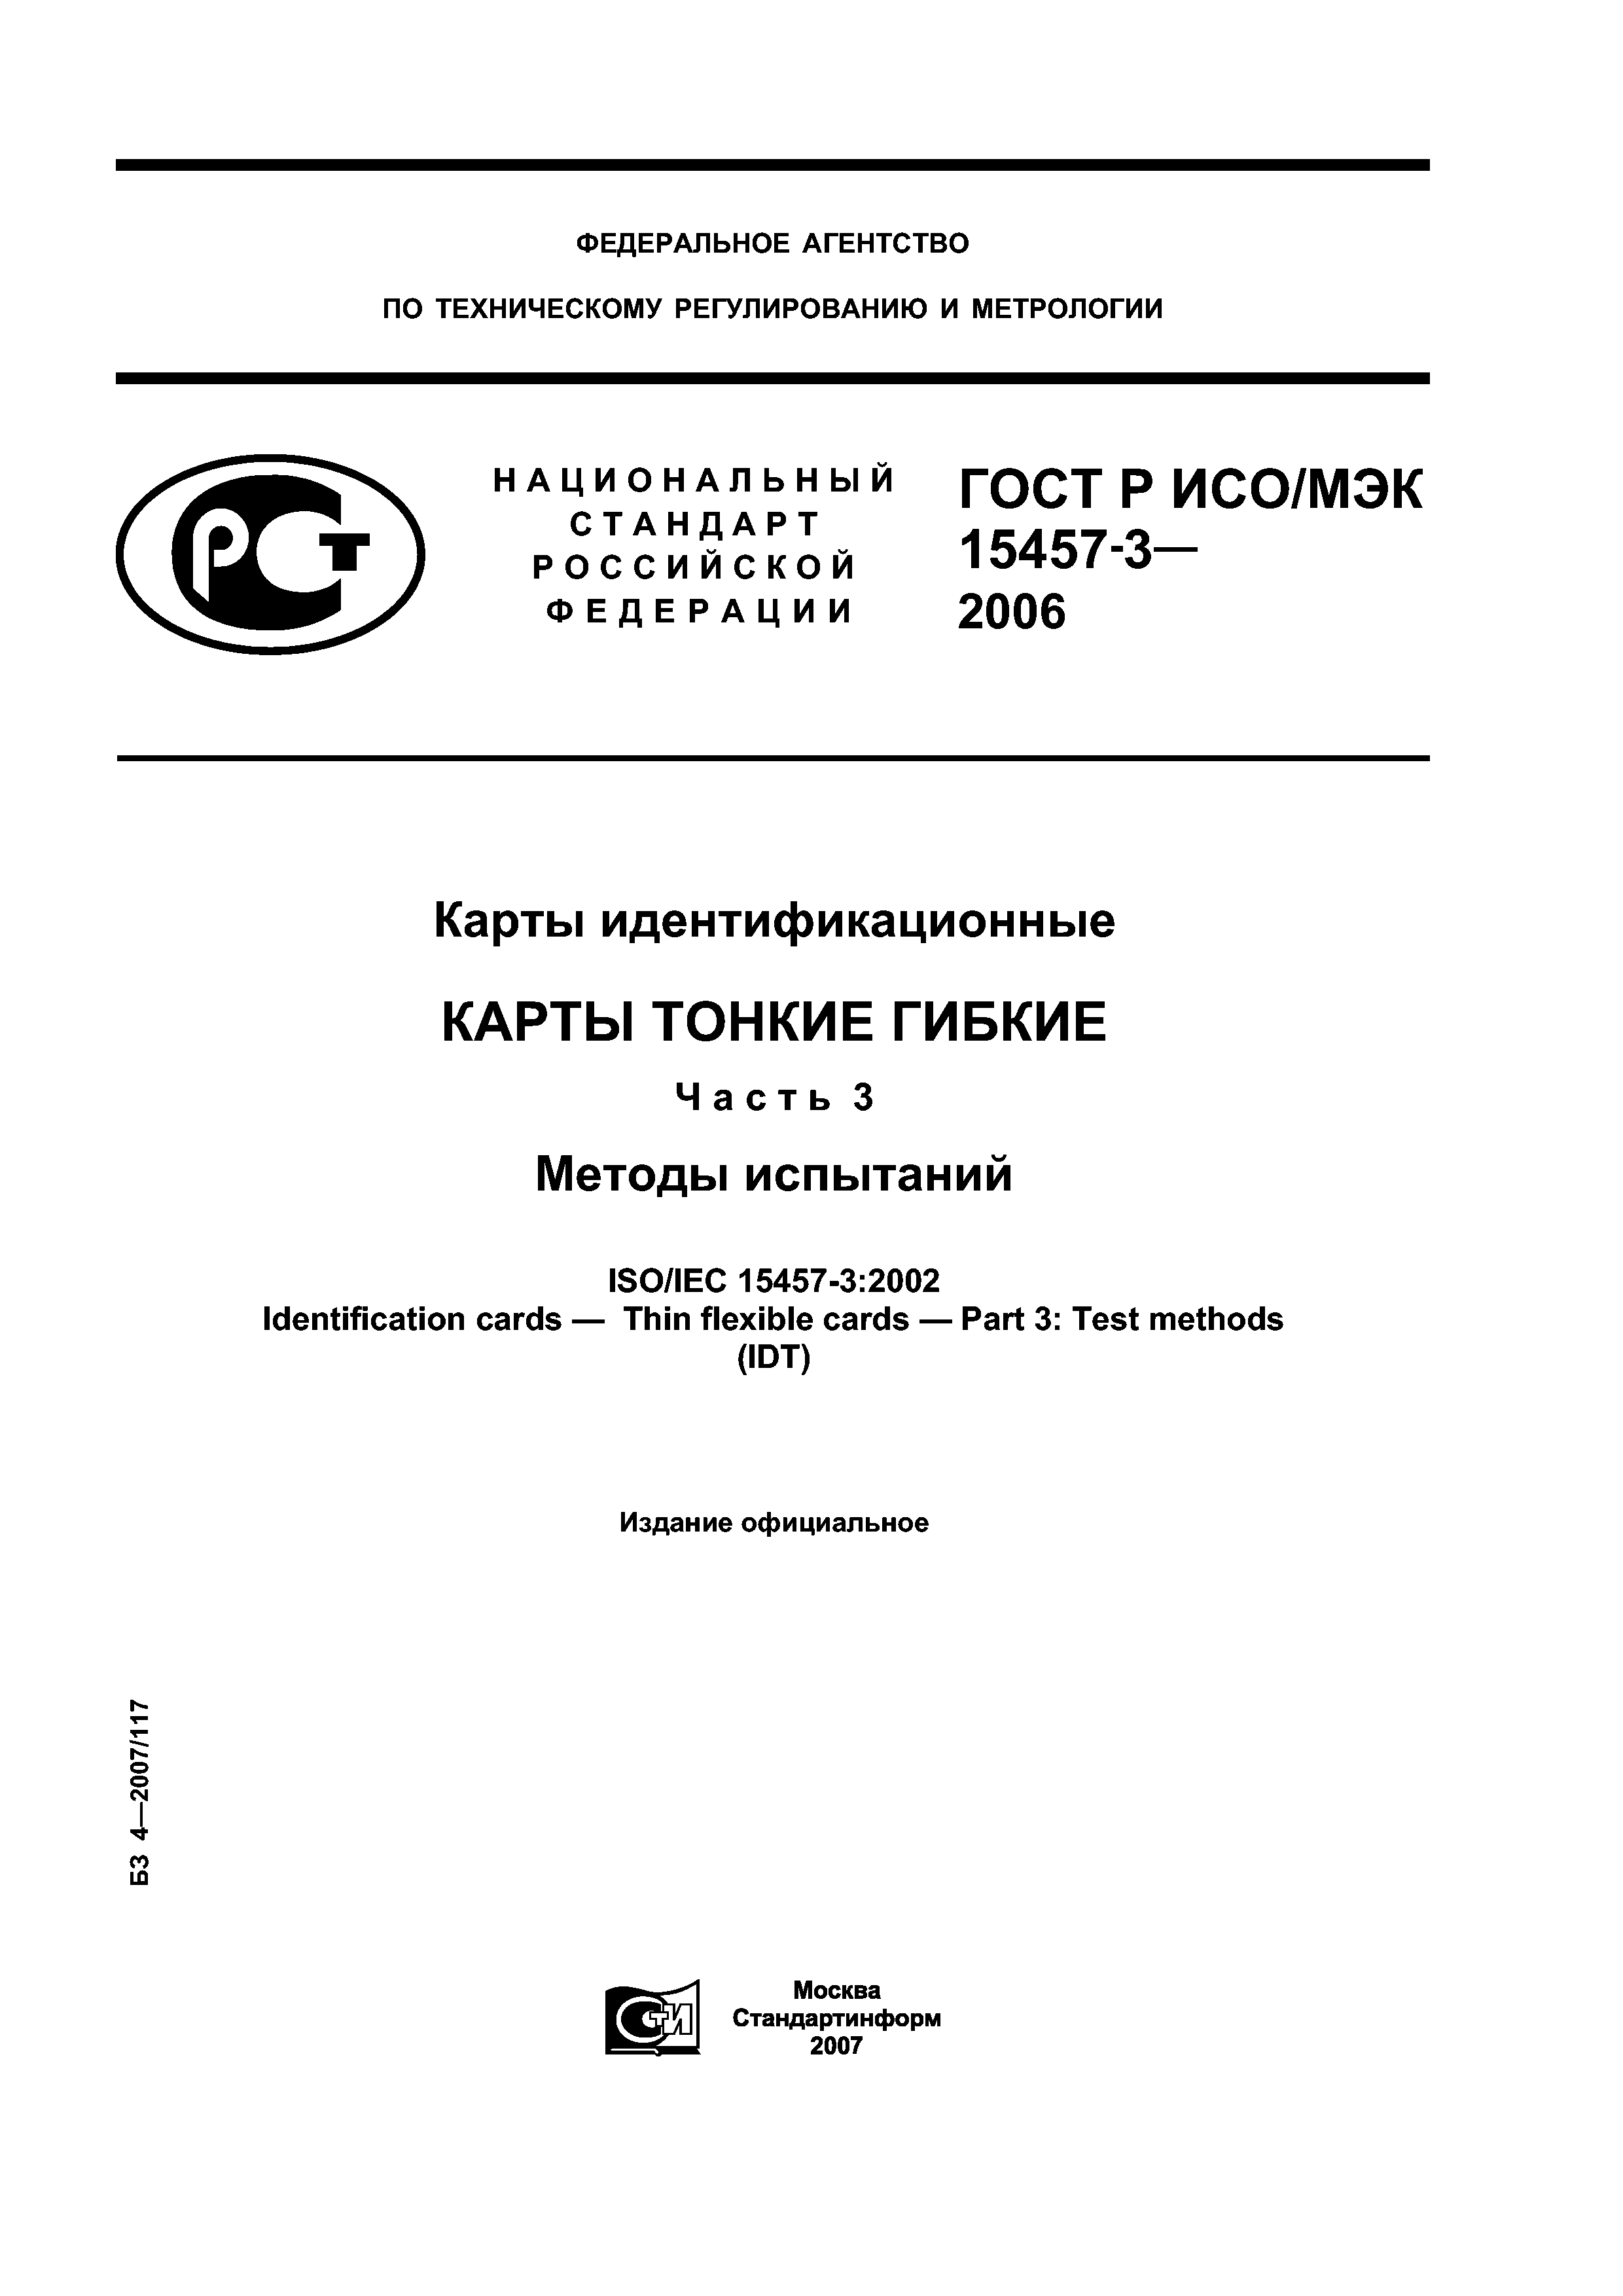 ГОСТ Р ИСО/МЭК 15457-3-2006